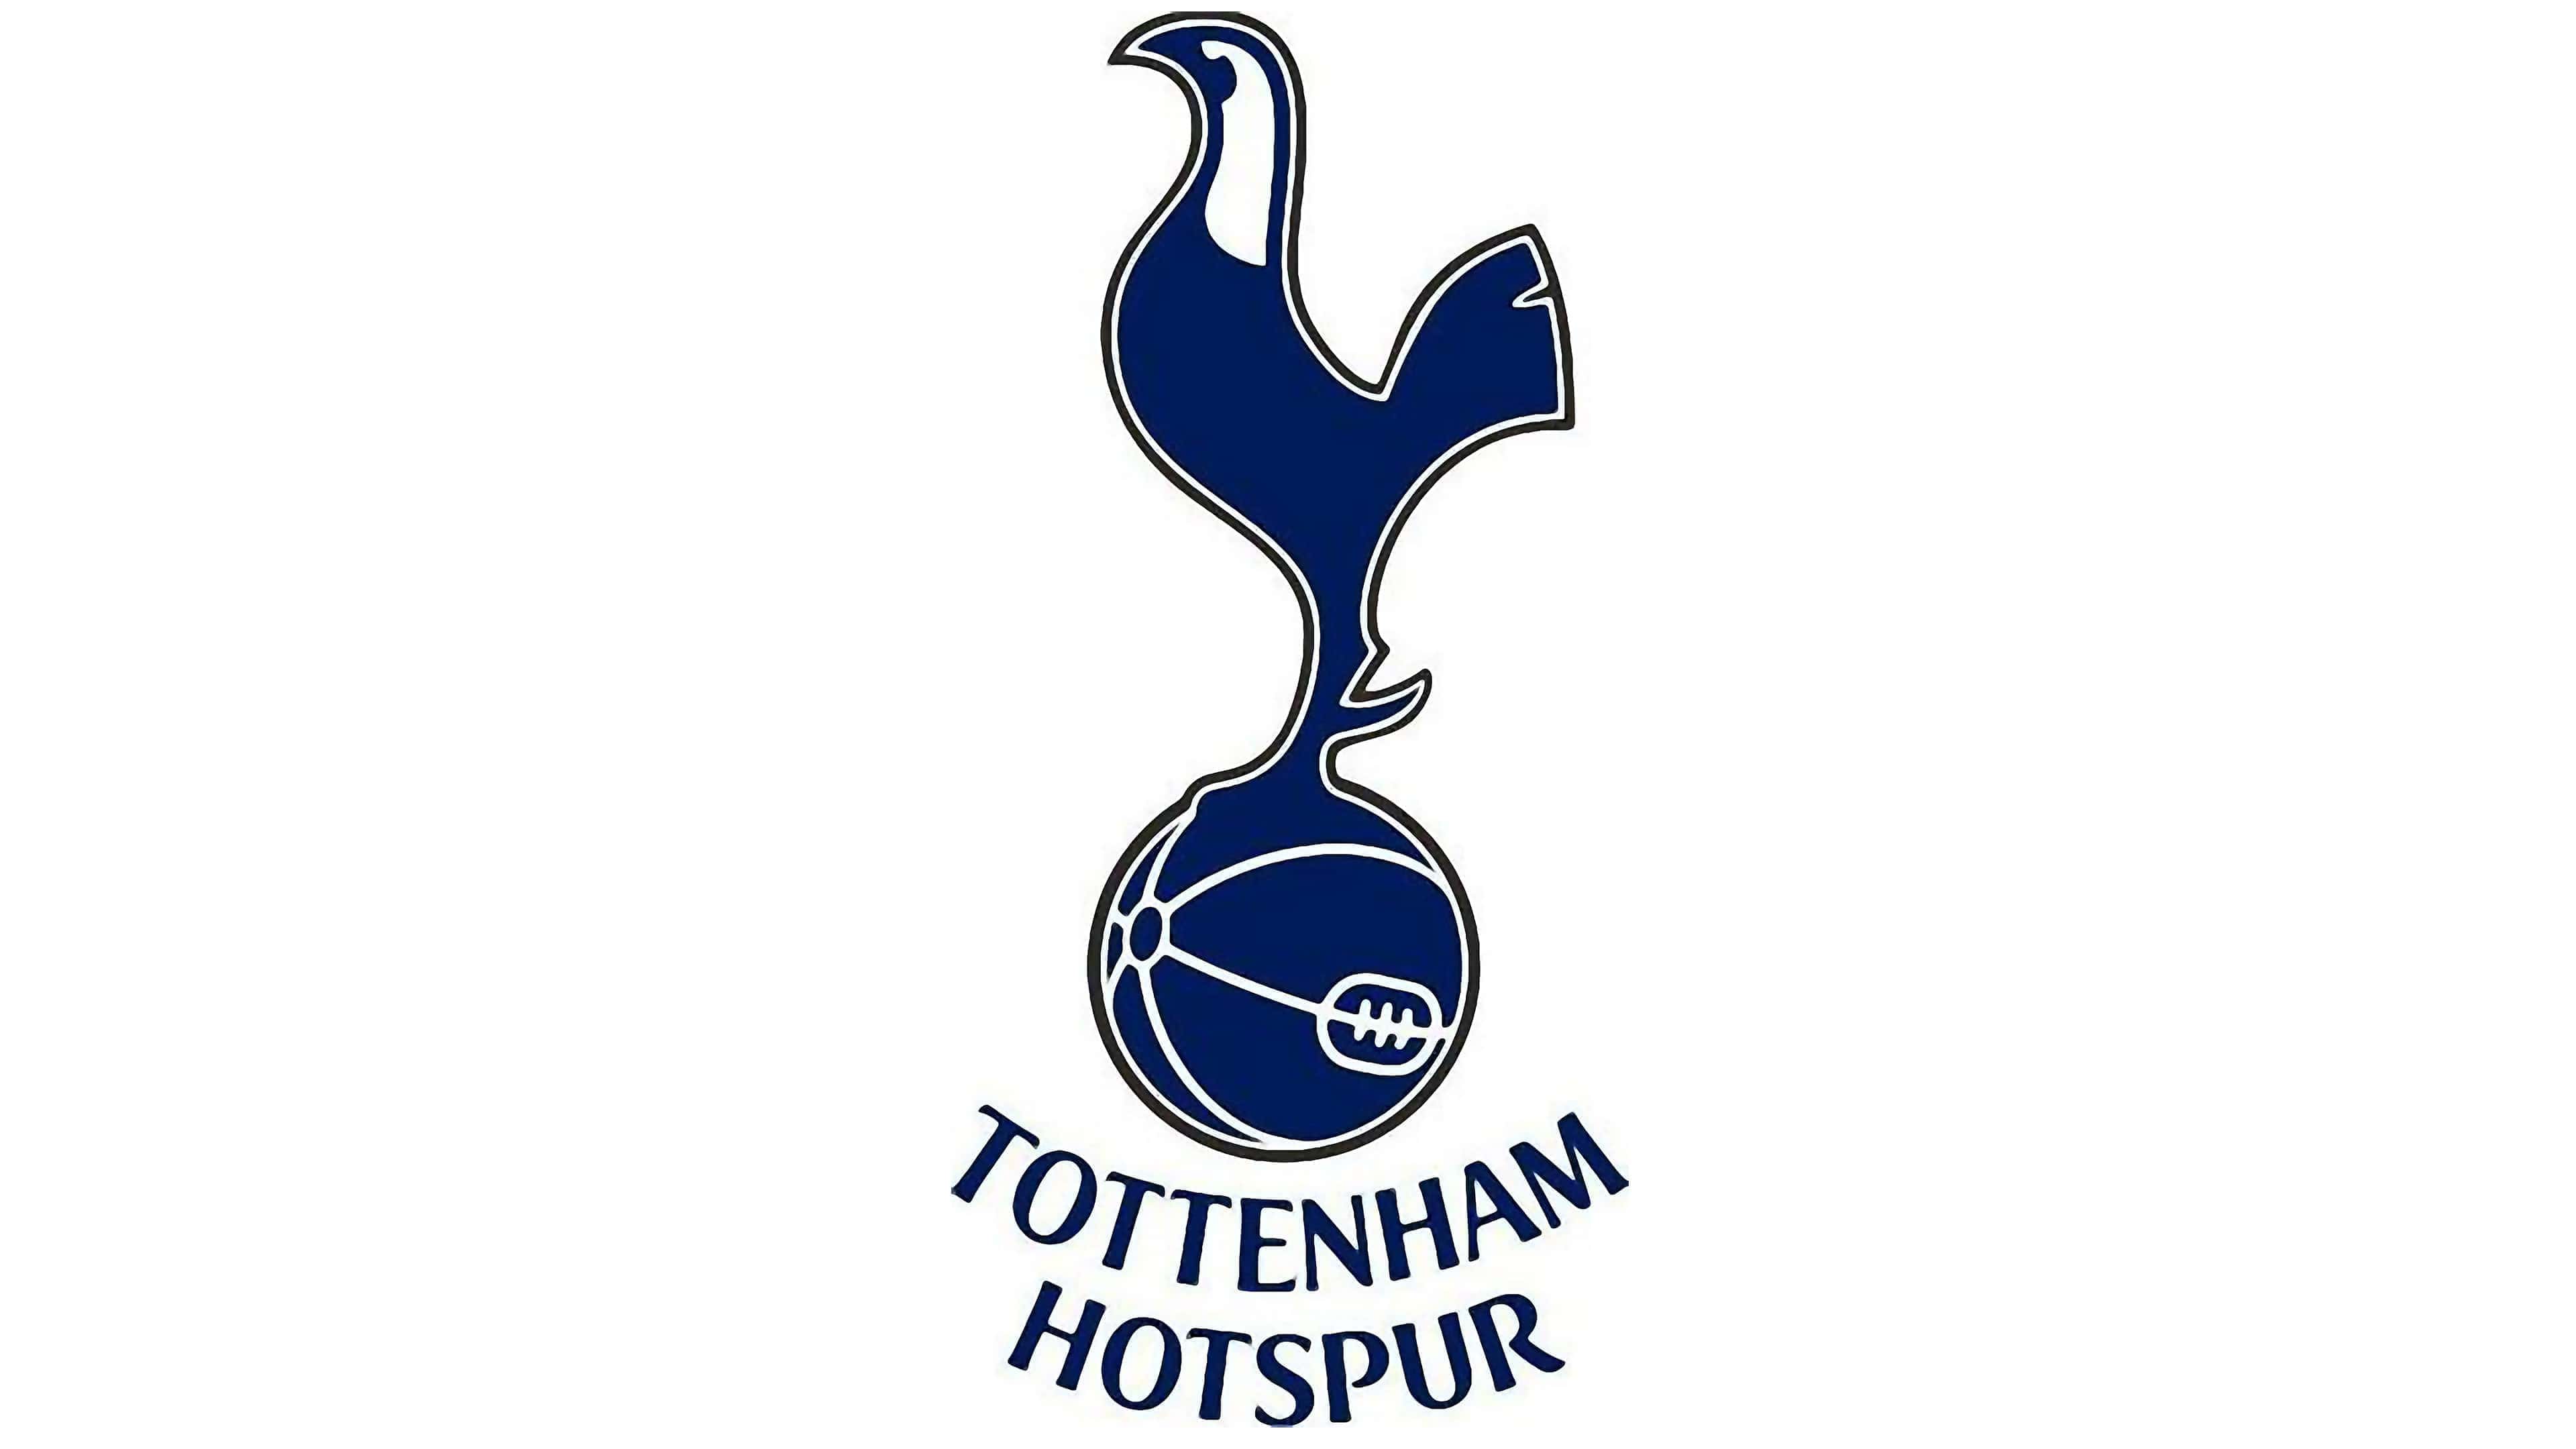 Tottenham-Hotspur-2006.jpg